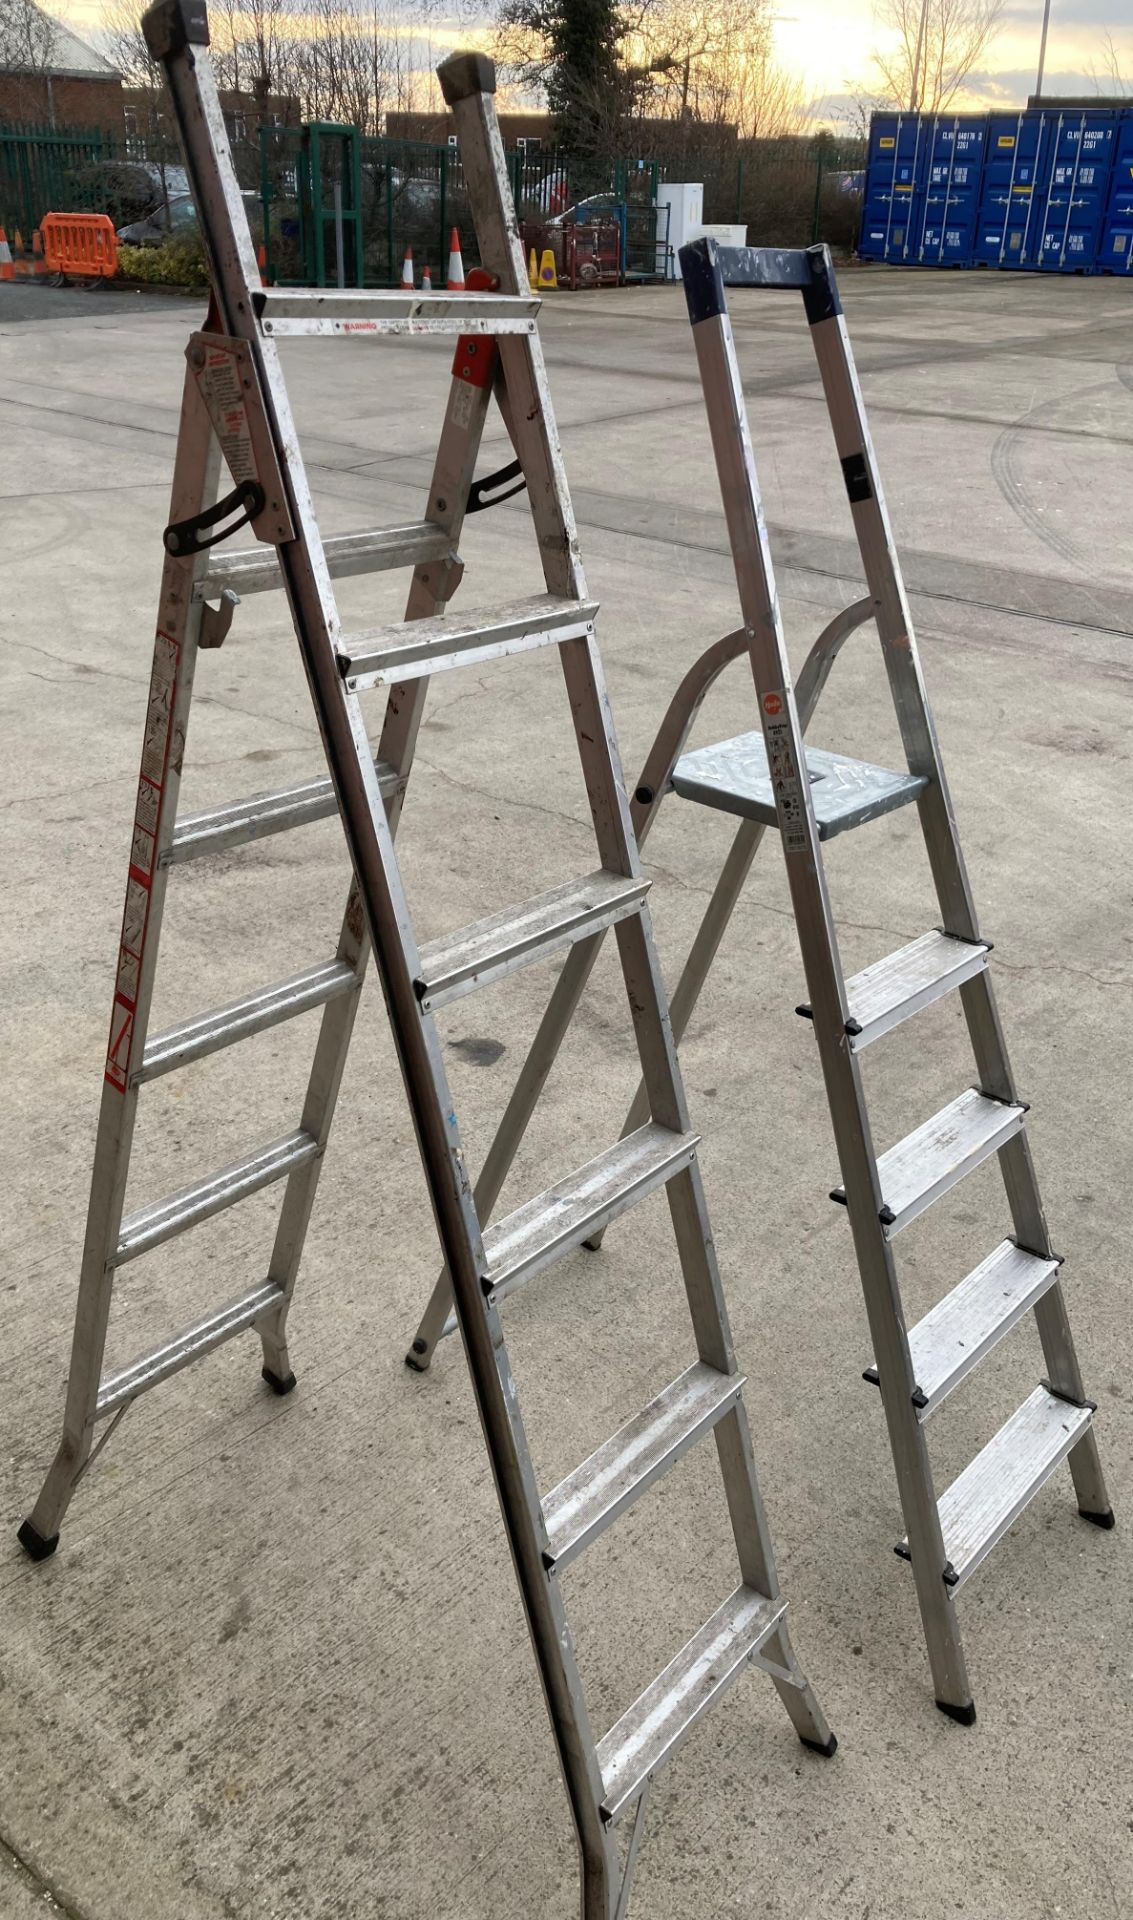 Aluminium 3-way safety ladder and a Hailo hobbystep 8925 4 rung step ladder